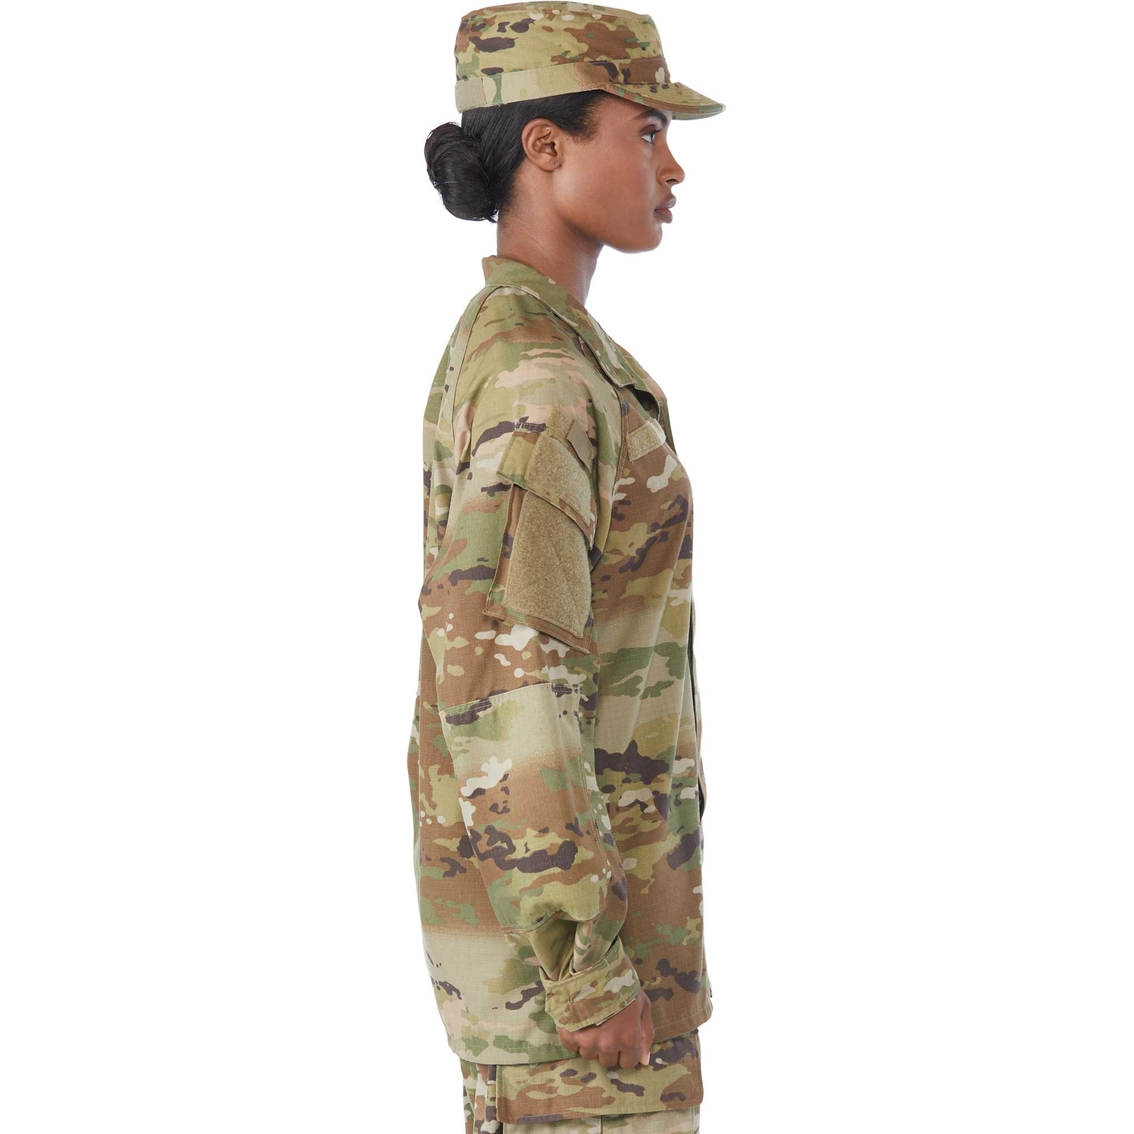 Army Improved Hot Weather Combat Uniform (IHWCU) Coat Female (OCP) - Image 3 of 4